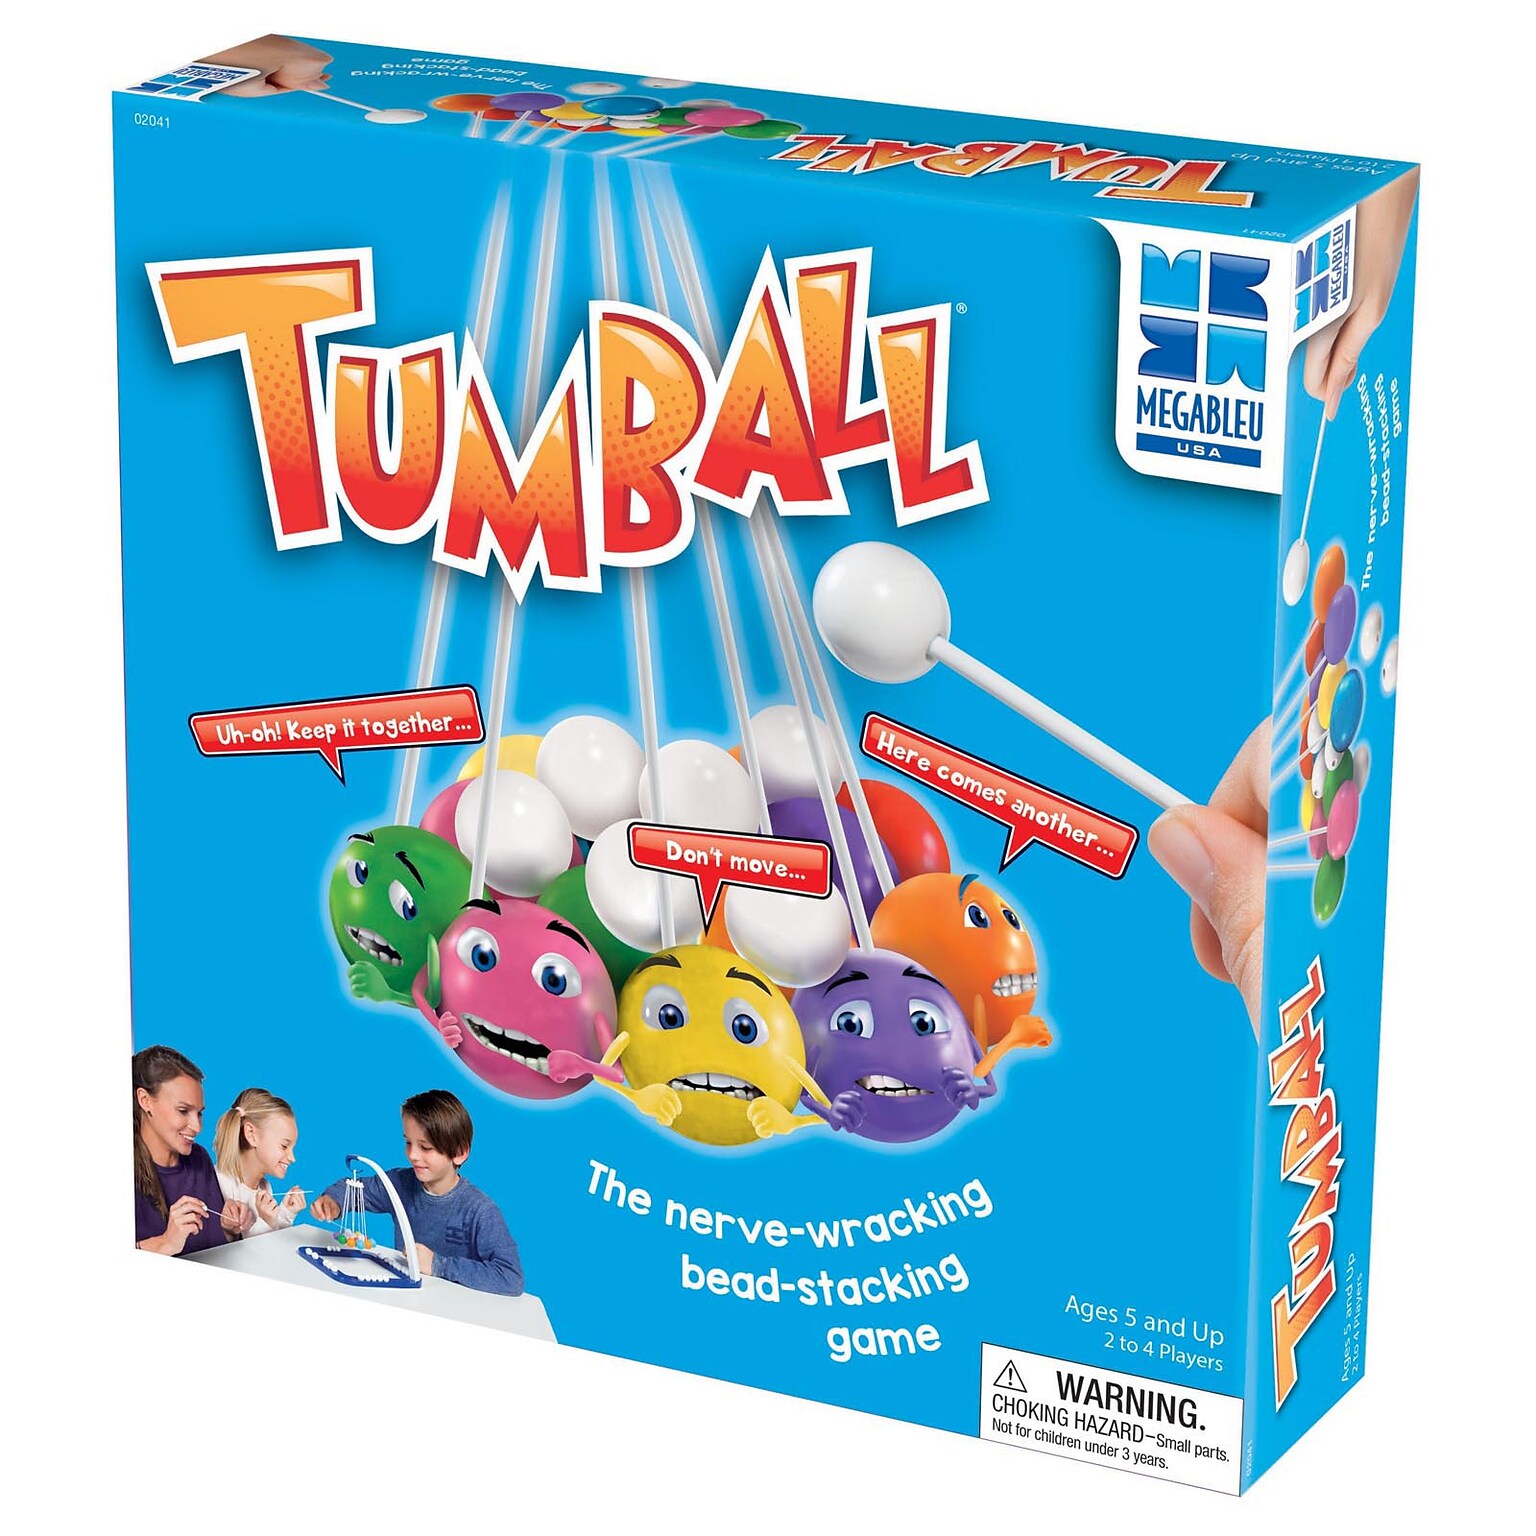 MEGABLEU Tumball Bead Stacking Game (UG-2041)